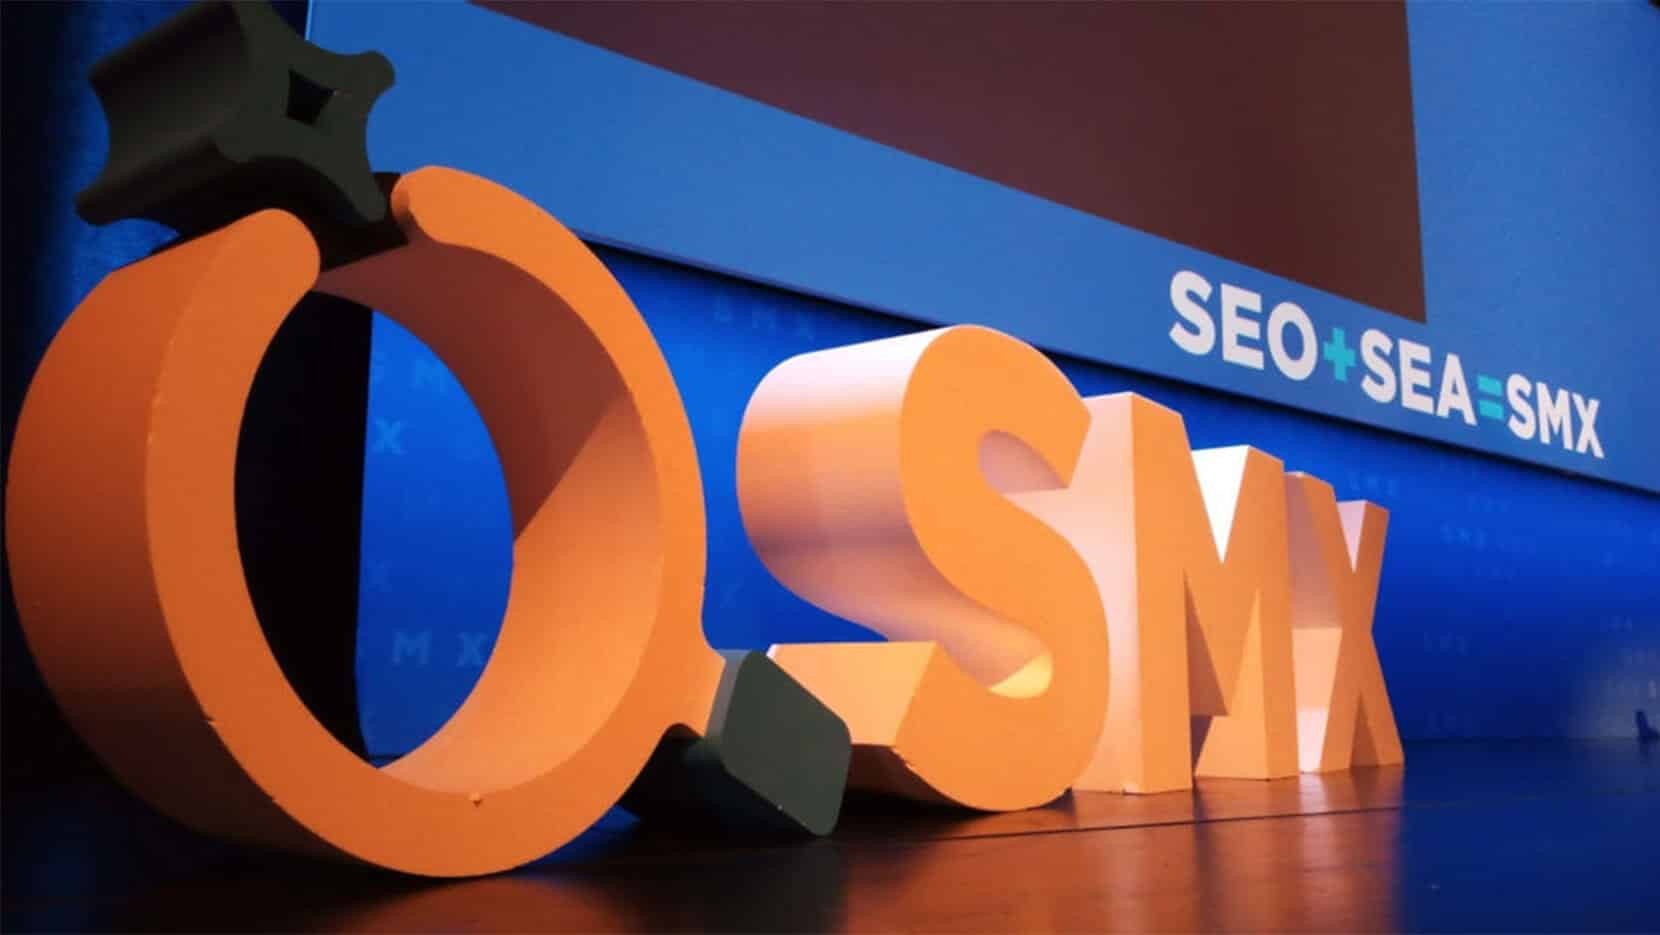 SMX 2019 - große Bühne für SEO und SEA